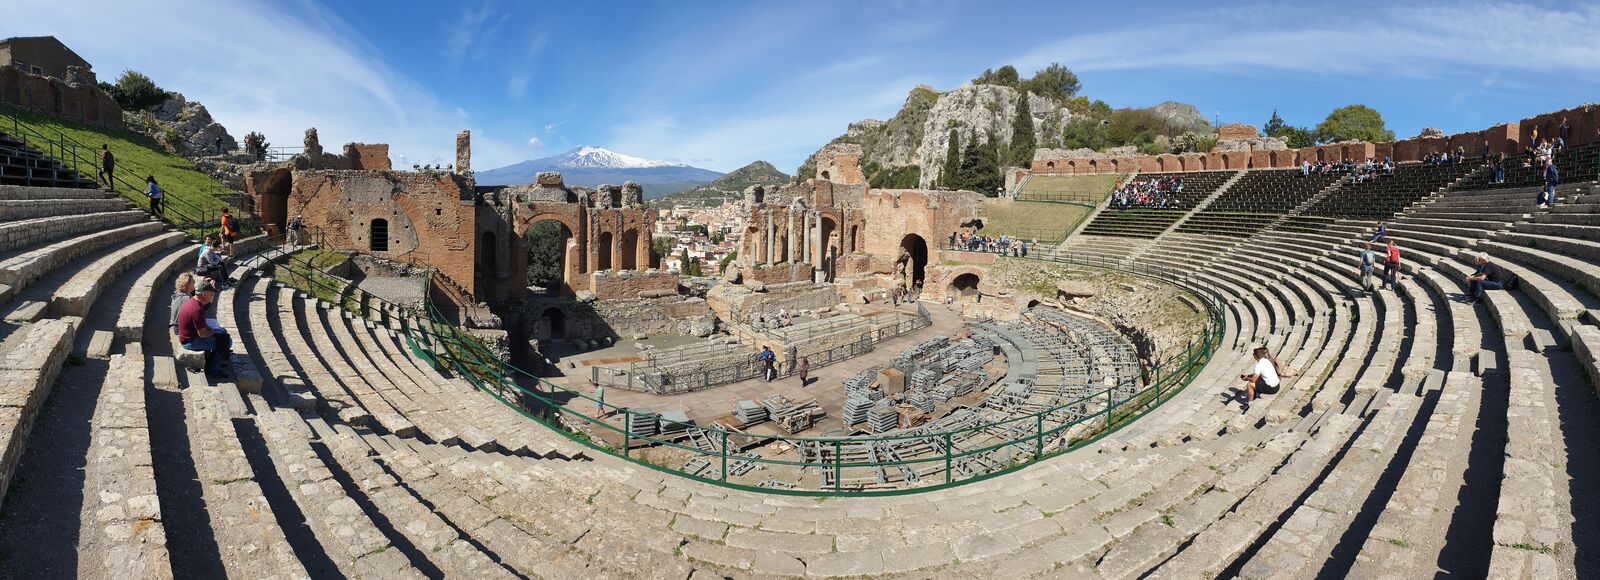 Das griechische Amphitheater von Taormina mit Blick auf den Ätna